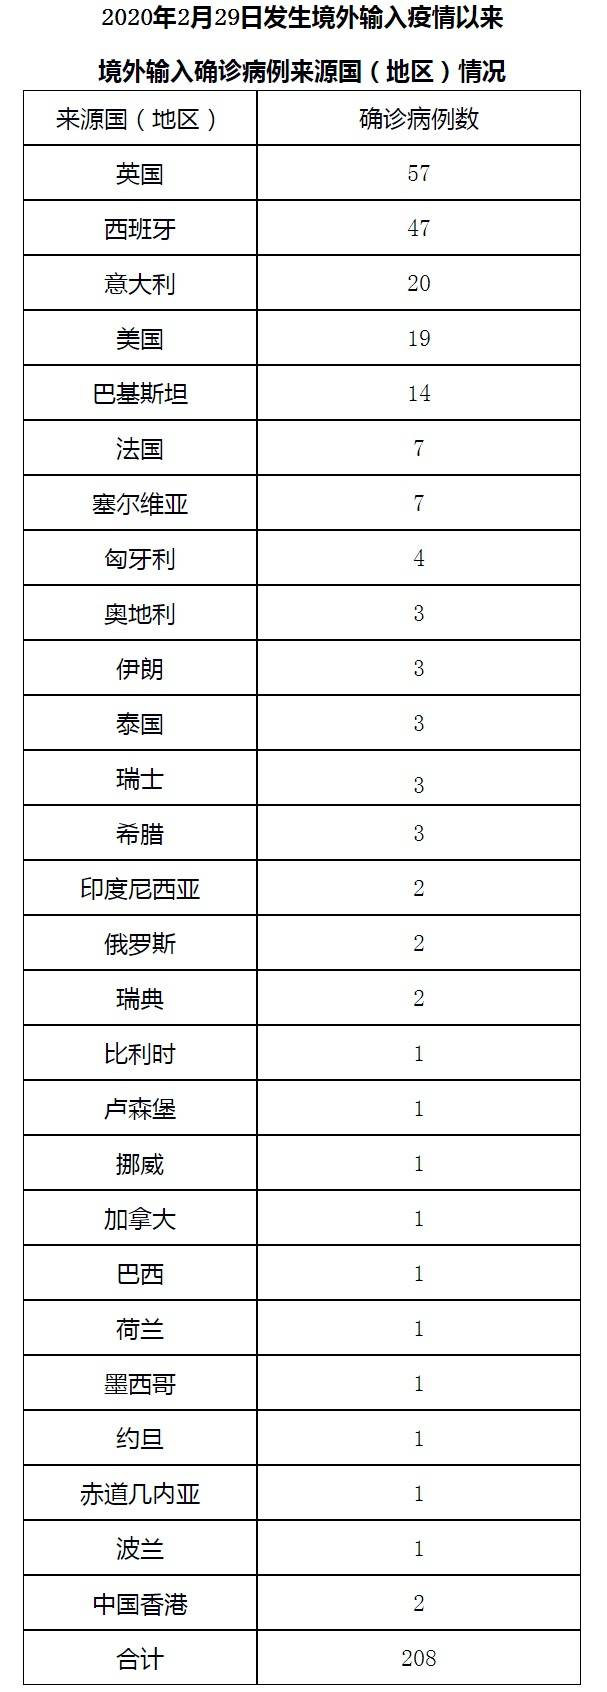 北京1月29日新增1例本地新冠肺炎确诊病例 治愈出院3例